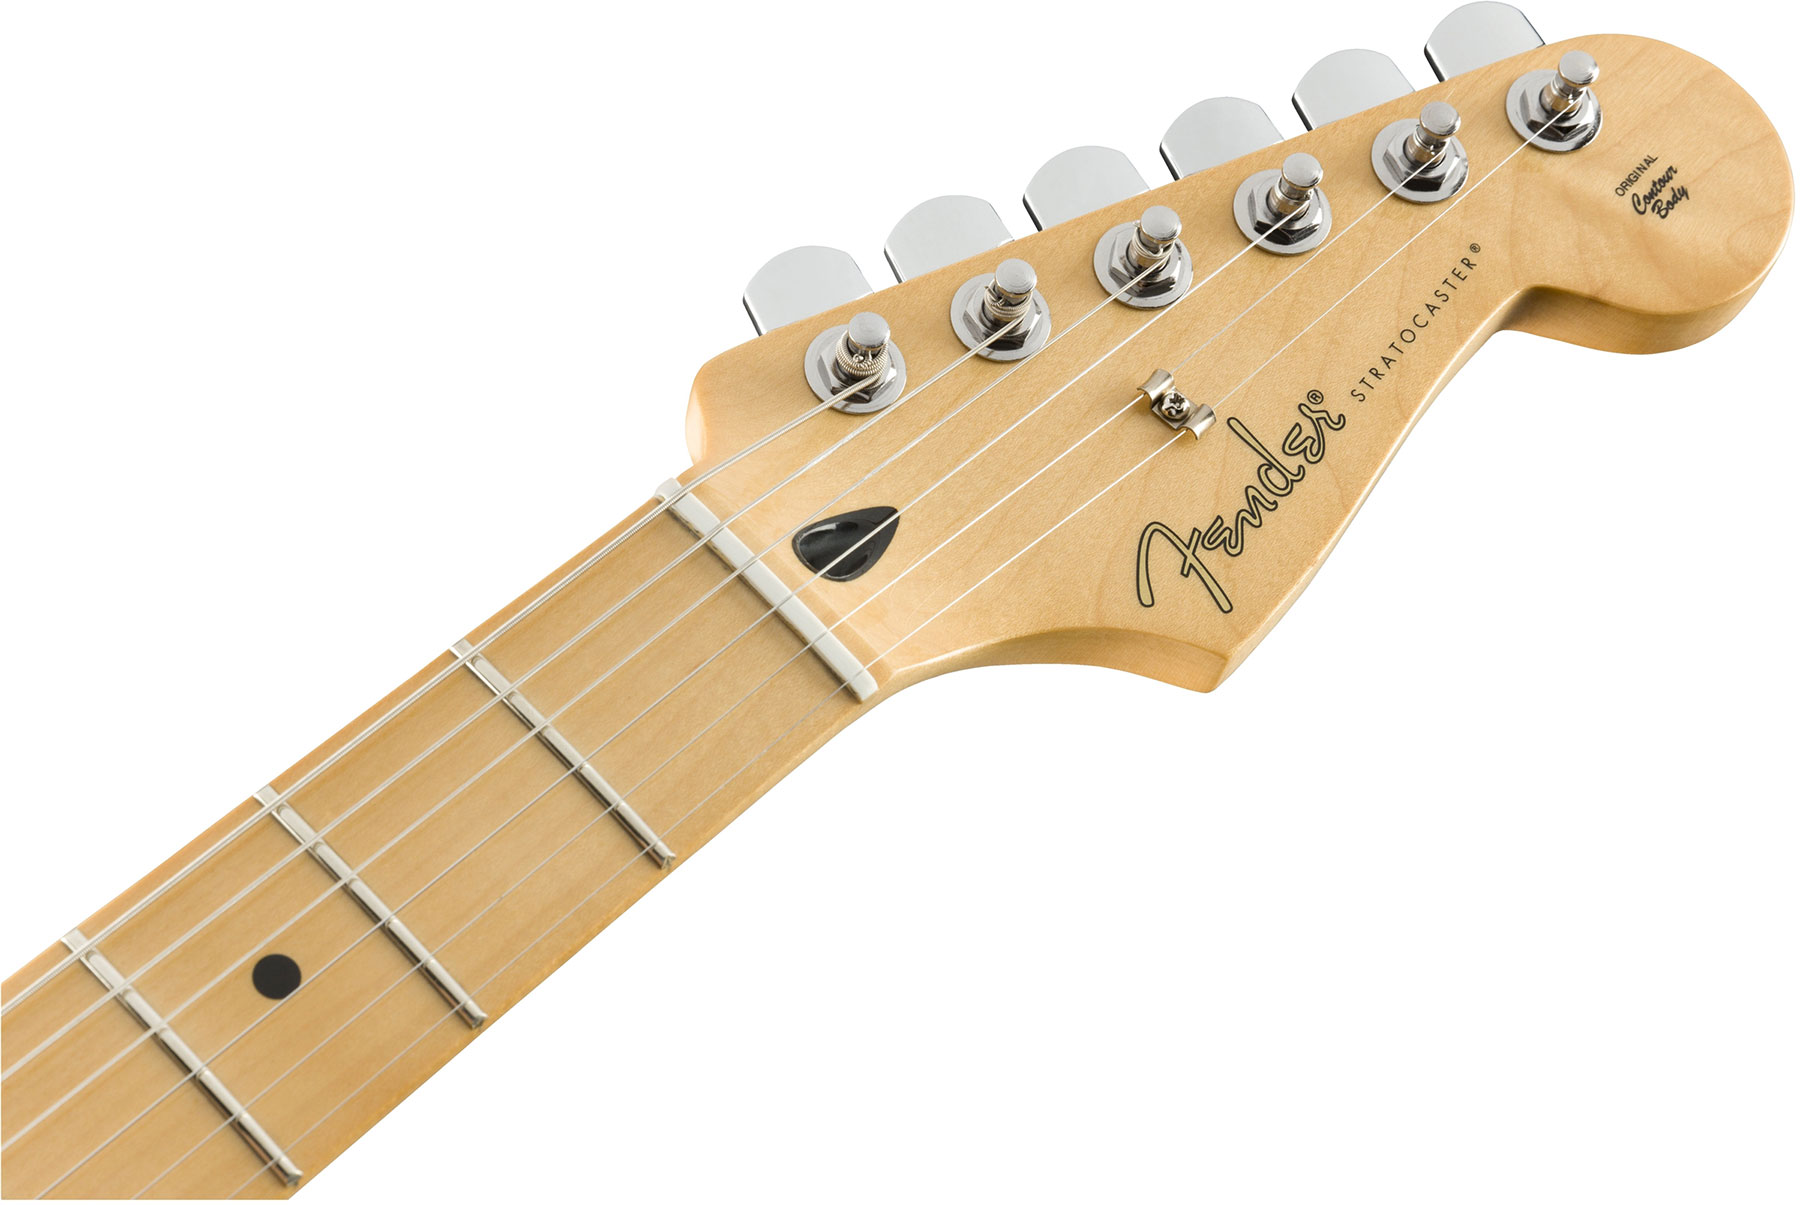 Fender Strat Player Hss Plus Top Fsr Ltd 2019 Mex Mn - Sienna Sunburst - Elektrische gitaar in Str-vorm - Variation 1